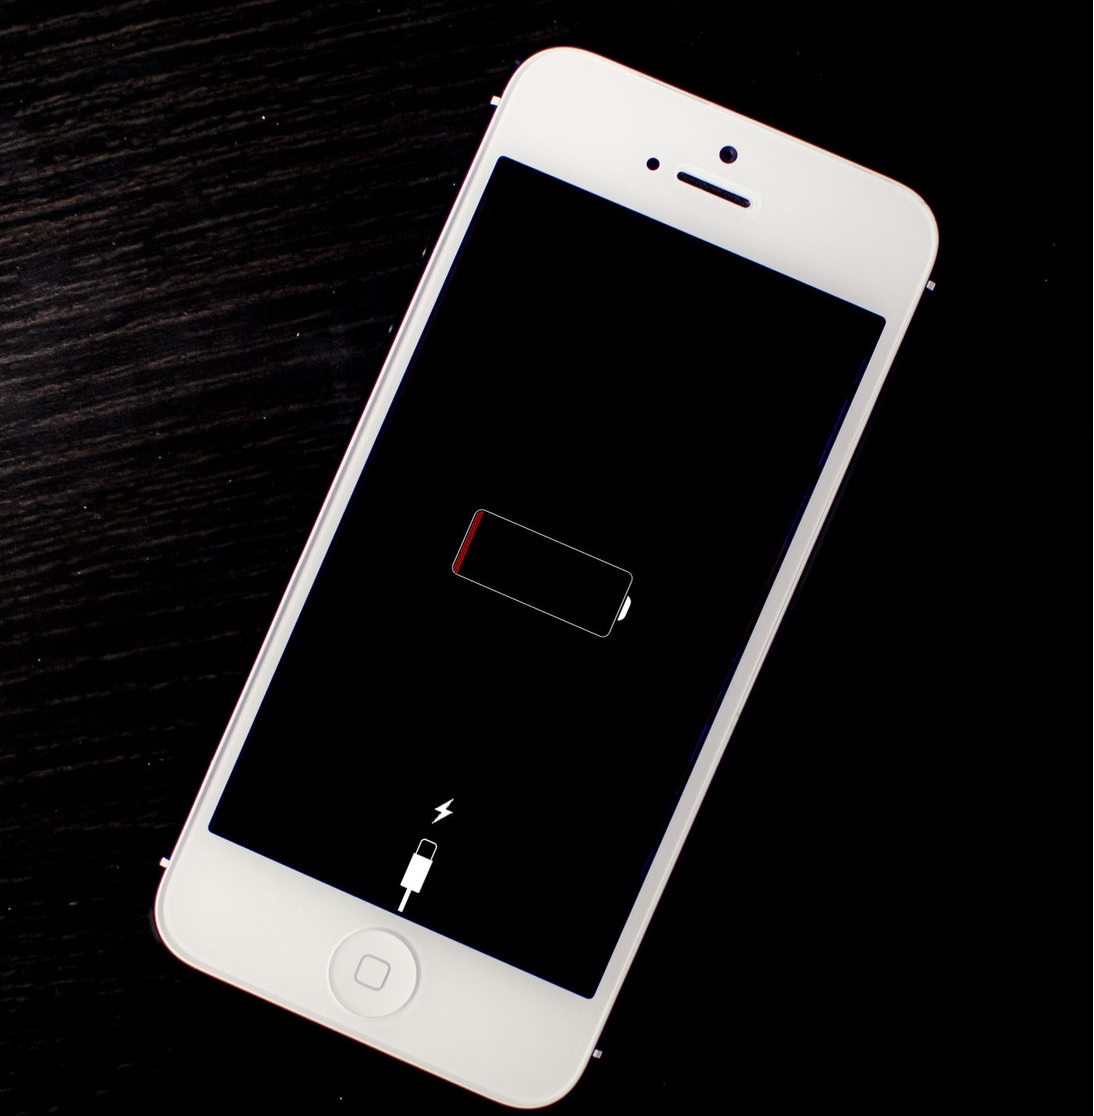 Có nên thay pin iPhone 5, 5s không? Những điều cần lưu ý